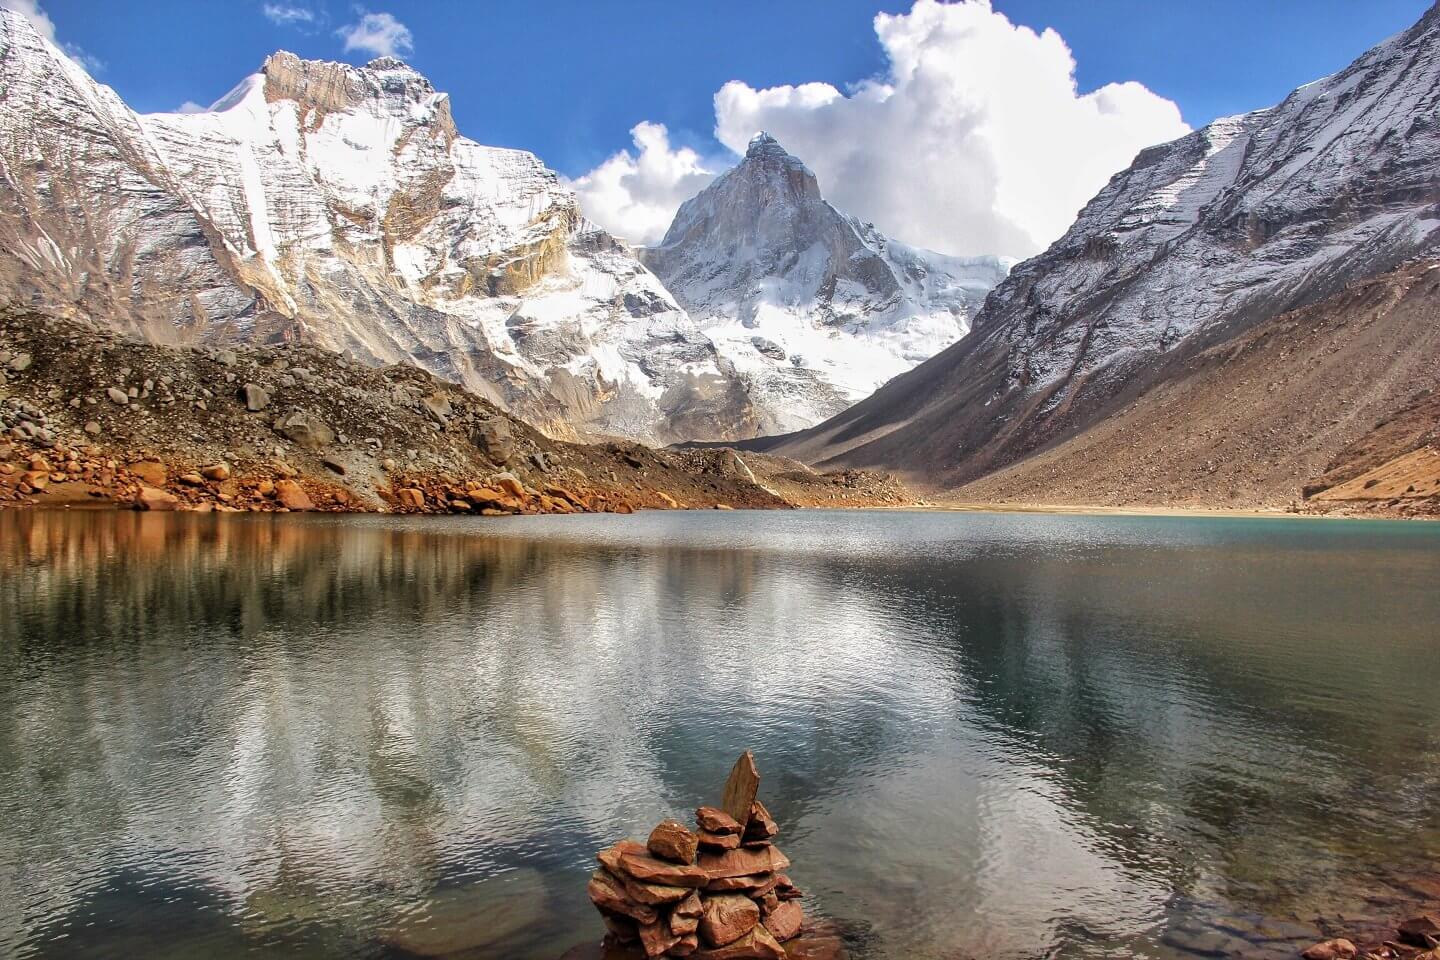 Kedartal Trek with Himalayan Climber